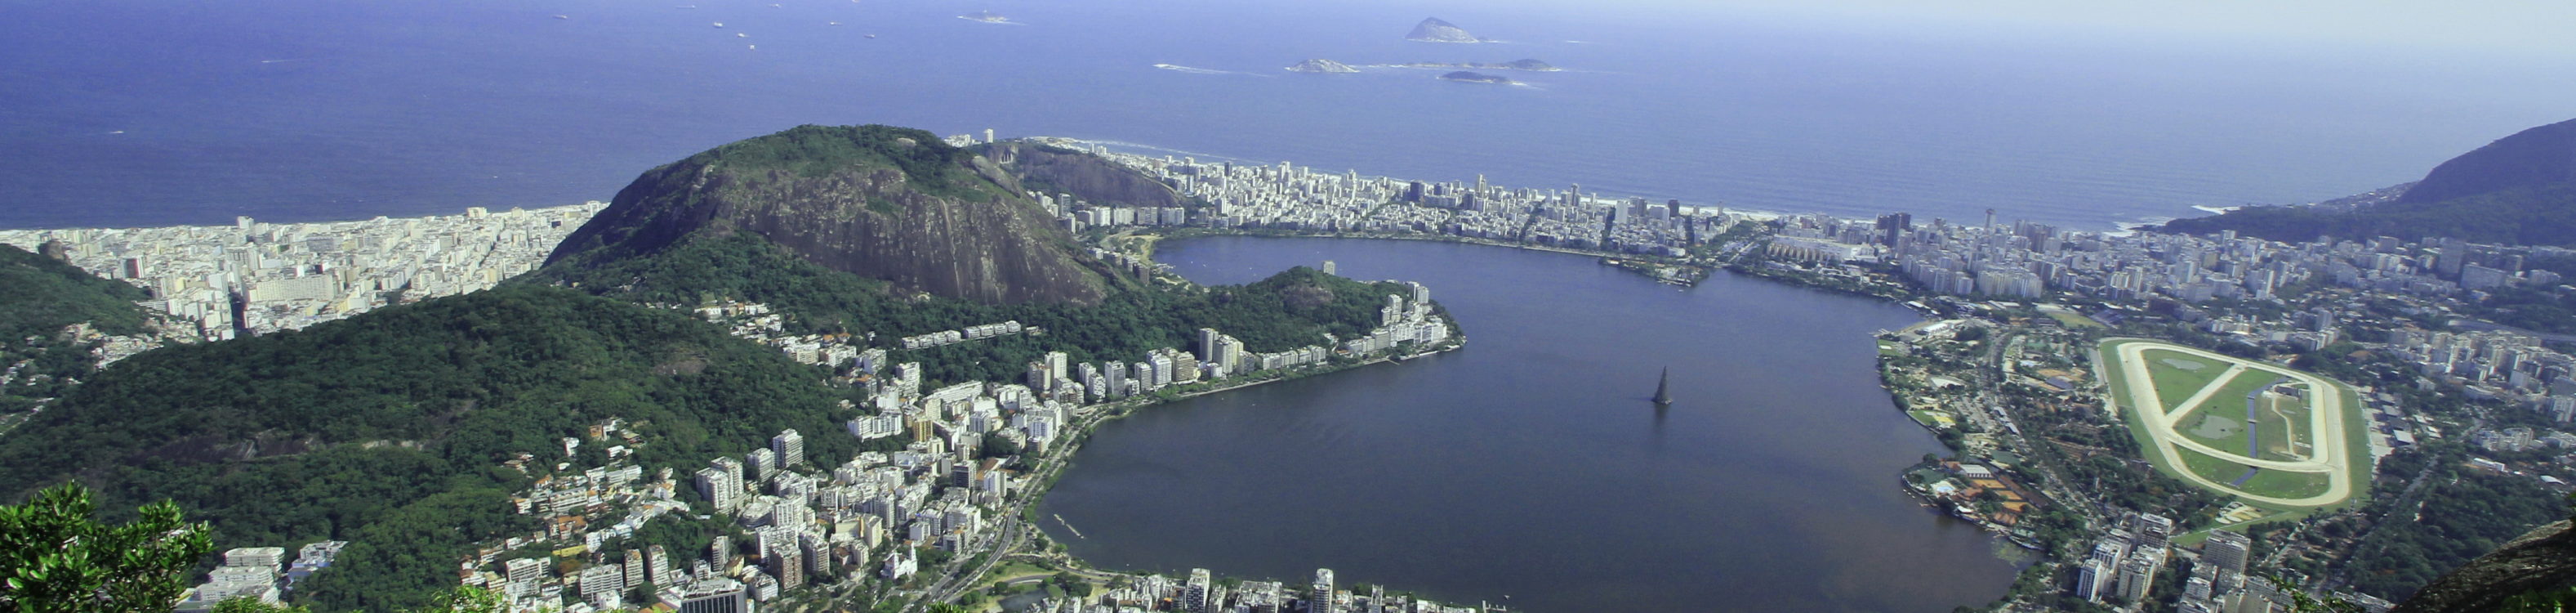 Rio de Janeiro vom Corcovado aus